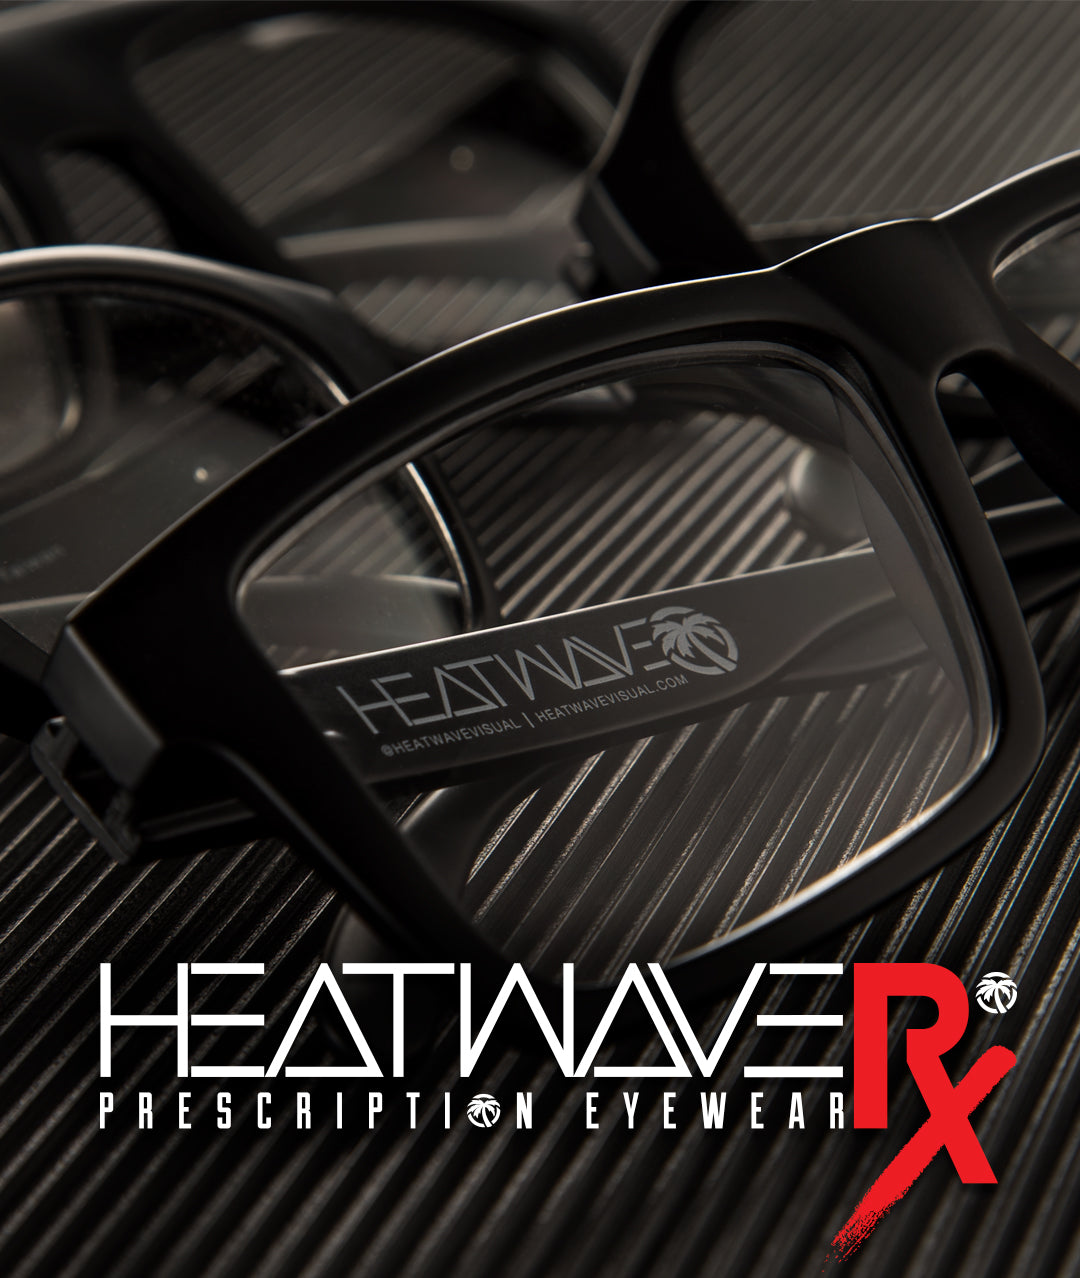 Heat Wave Prescription eyewear